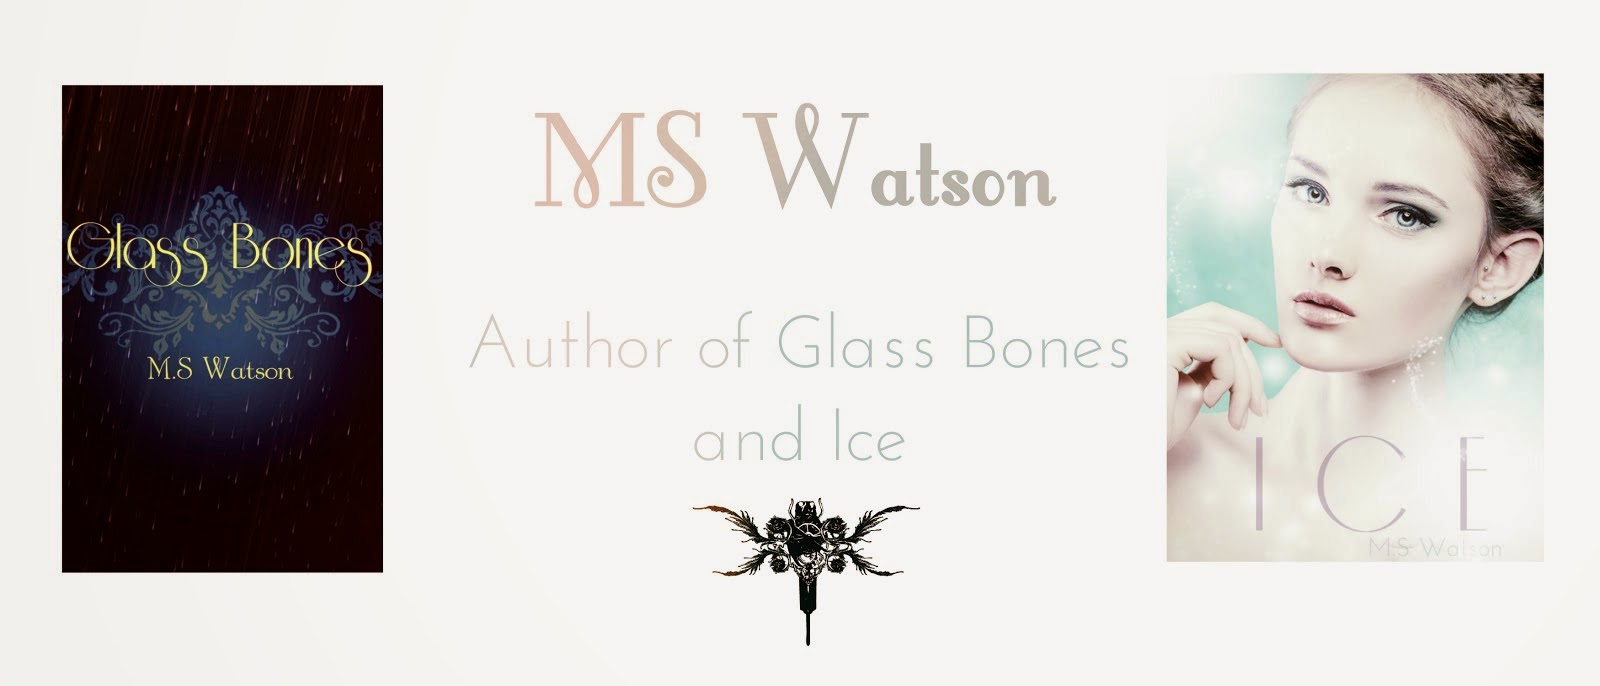 M.S. Watson